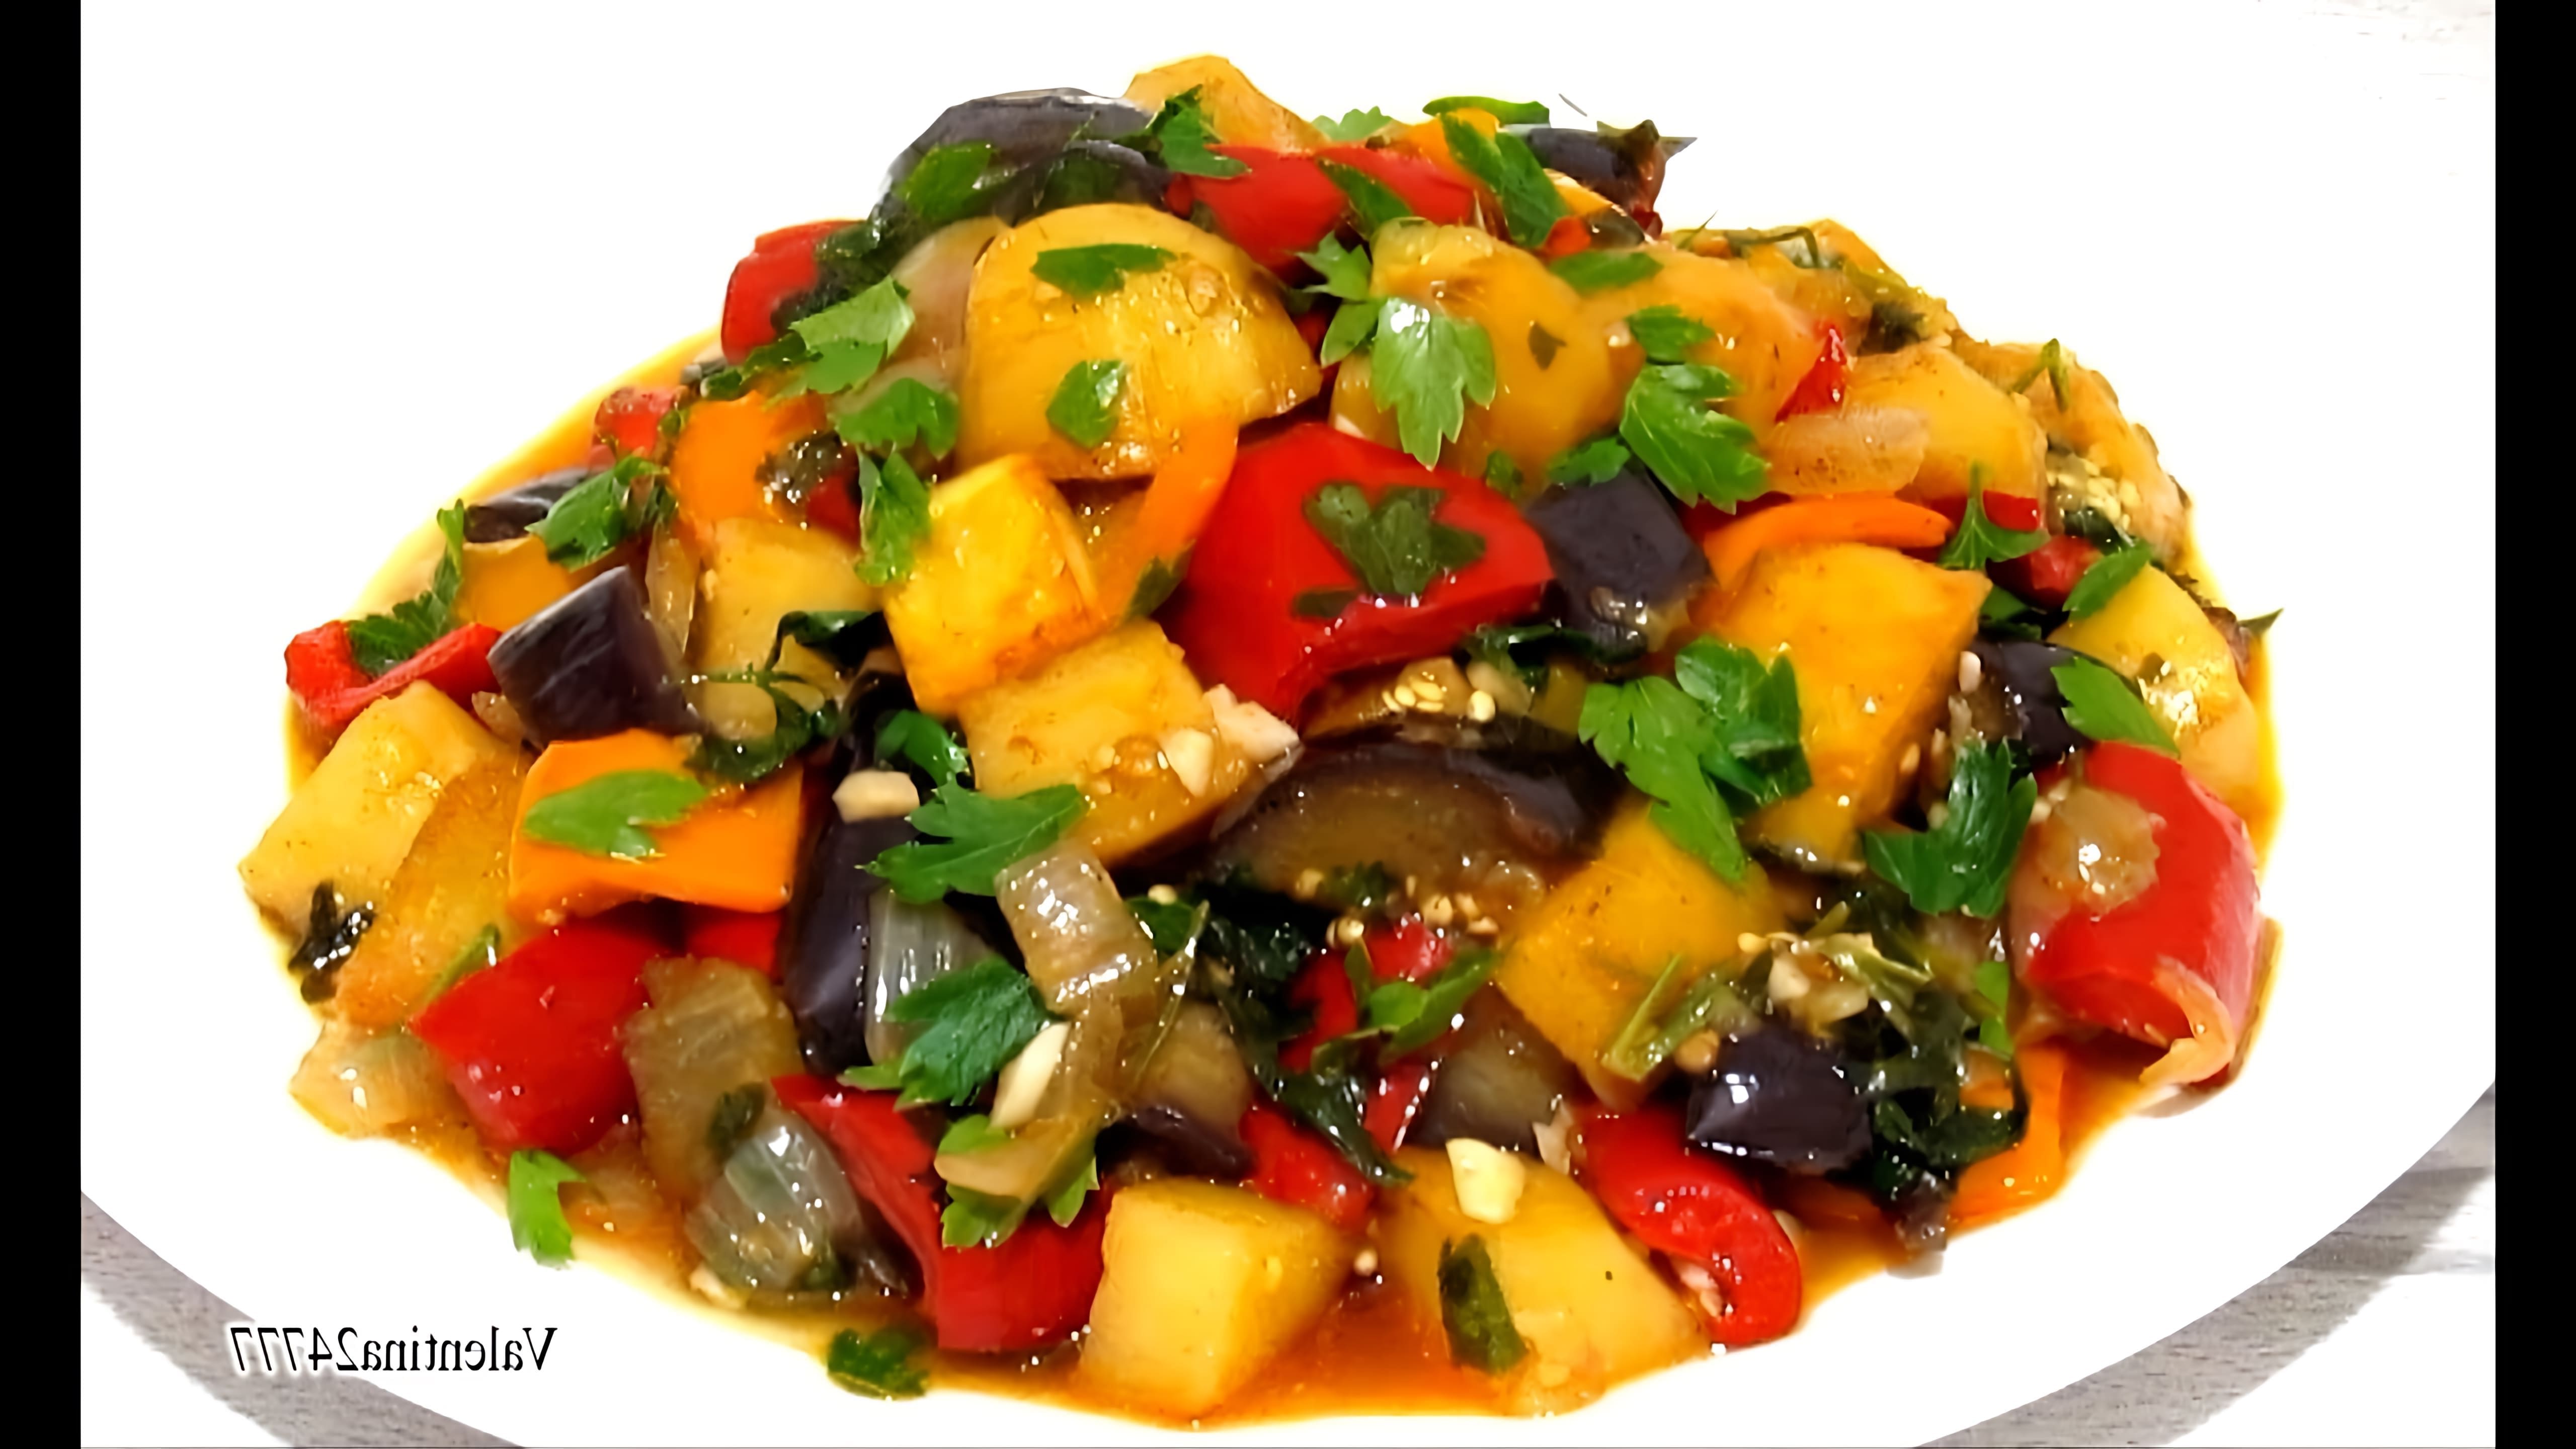 В этом видео демонстрируется рецепт приготовления очень вкусного овощного соте с баклажанами и картофелем